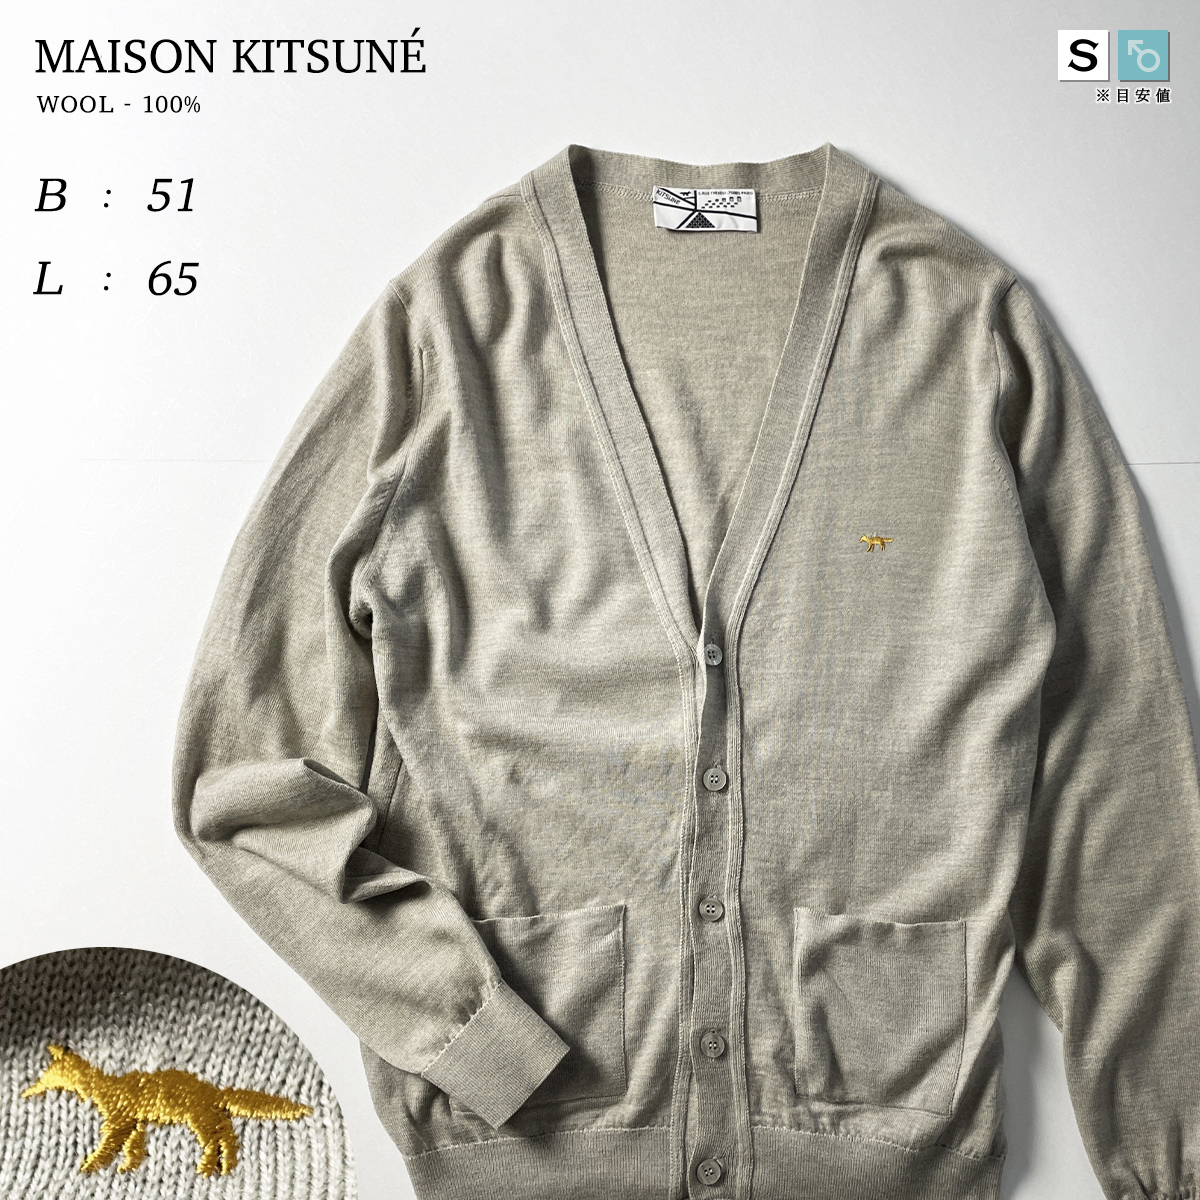 MAISON KITSUNE ウール 100% 毛 ウォッシャブル ワンポイント ロゴ